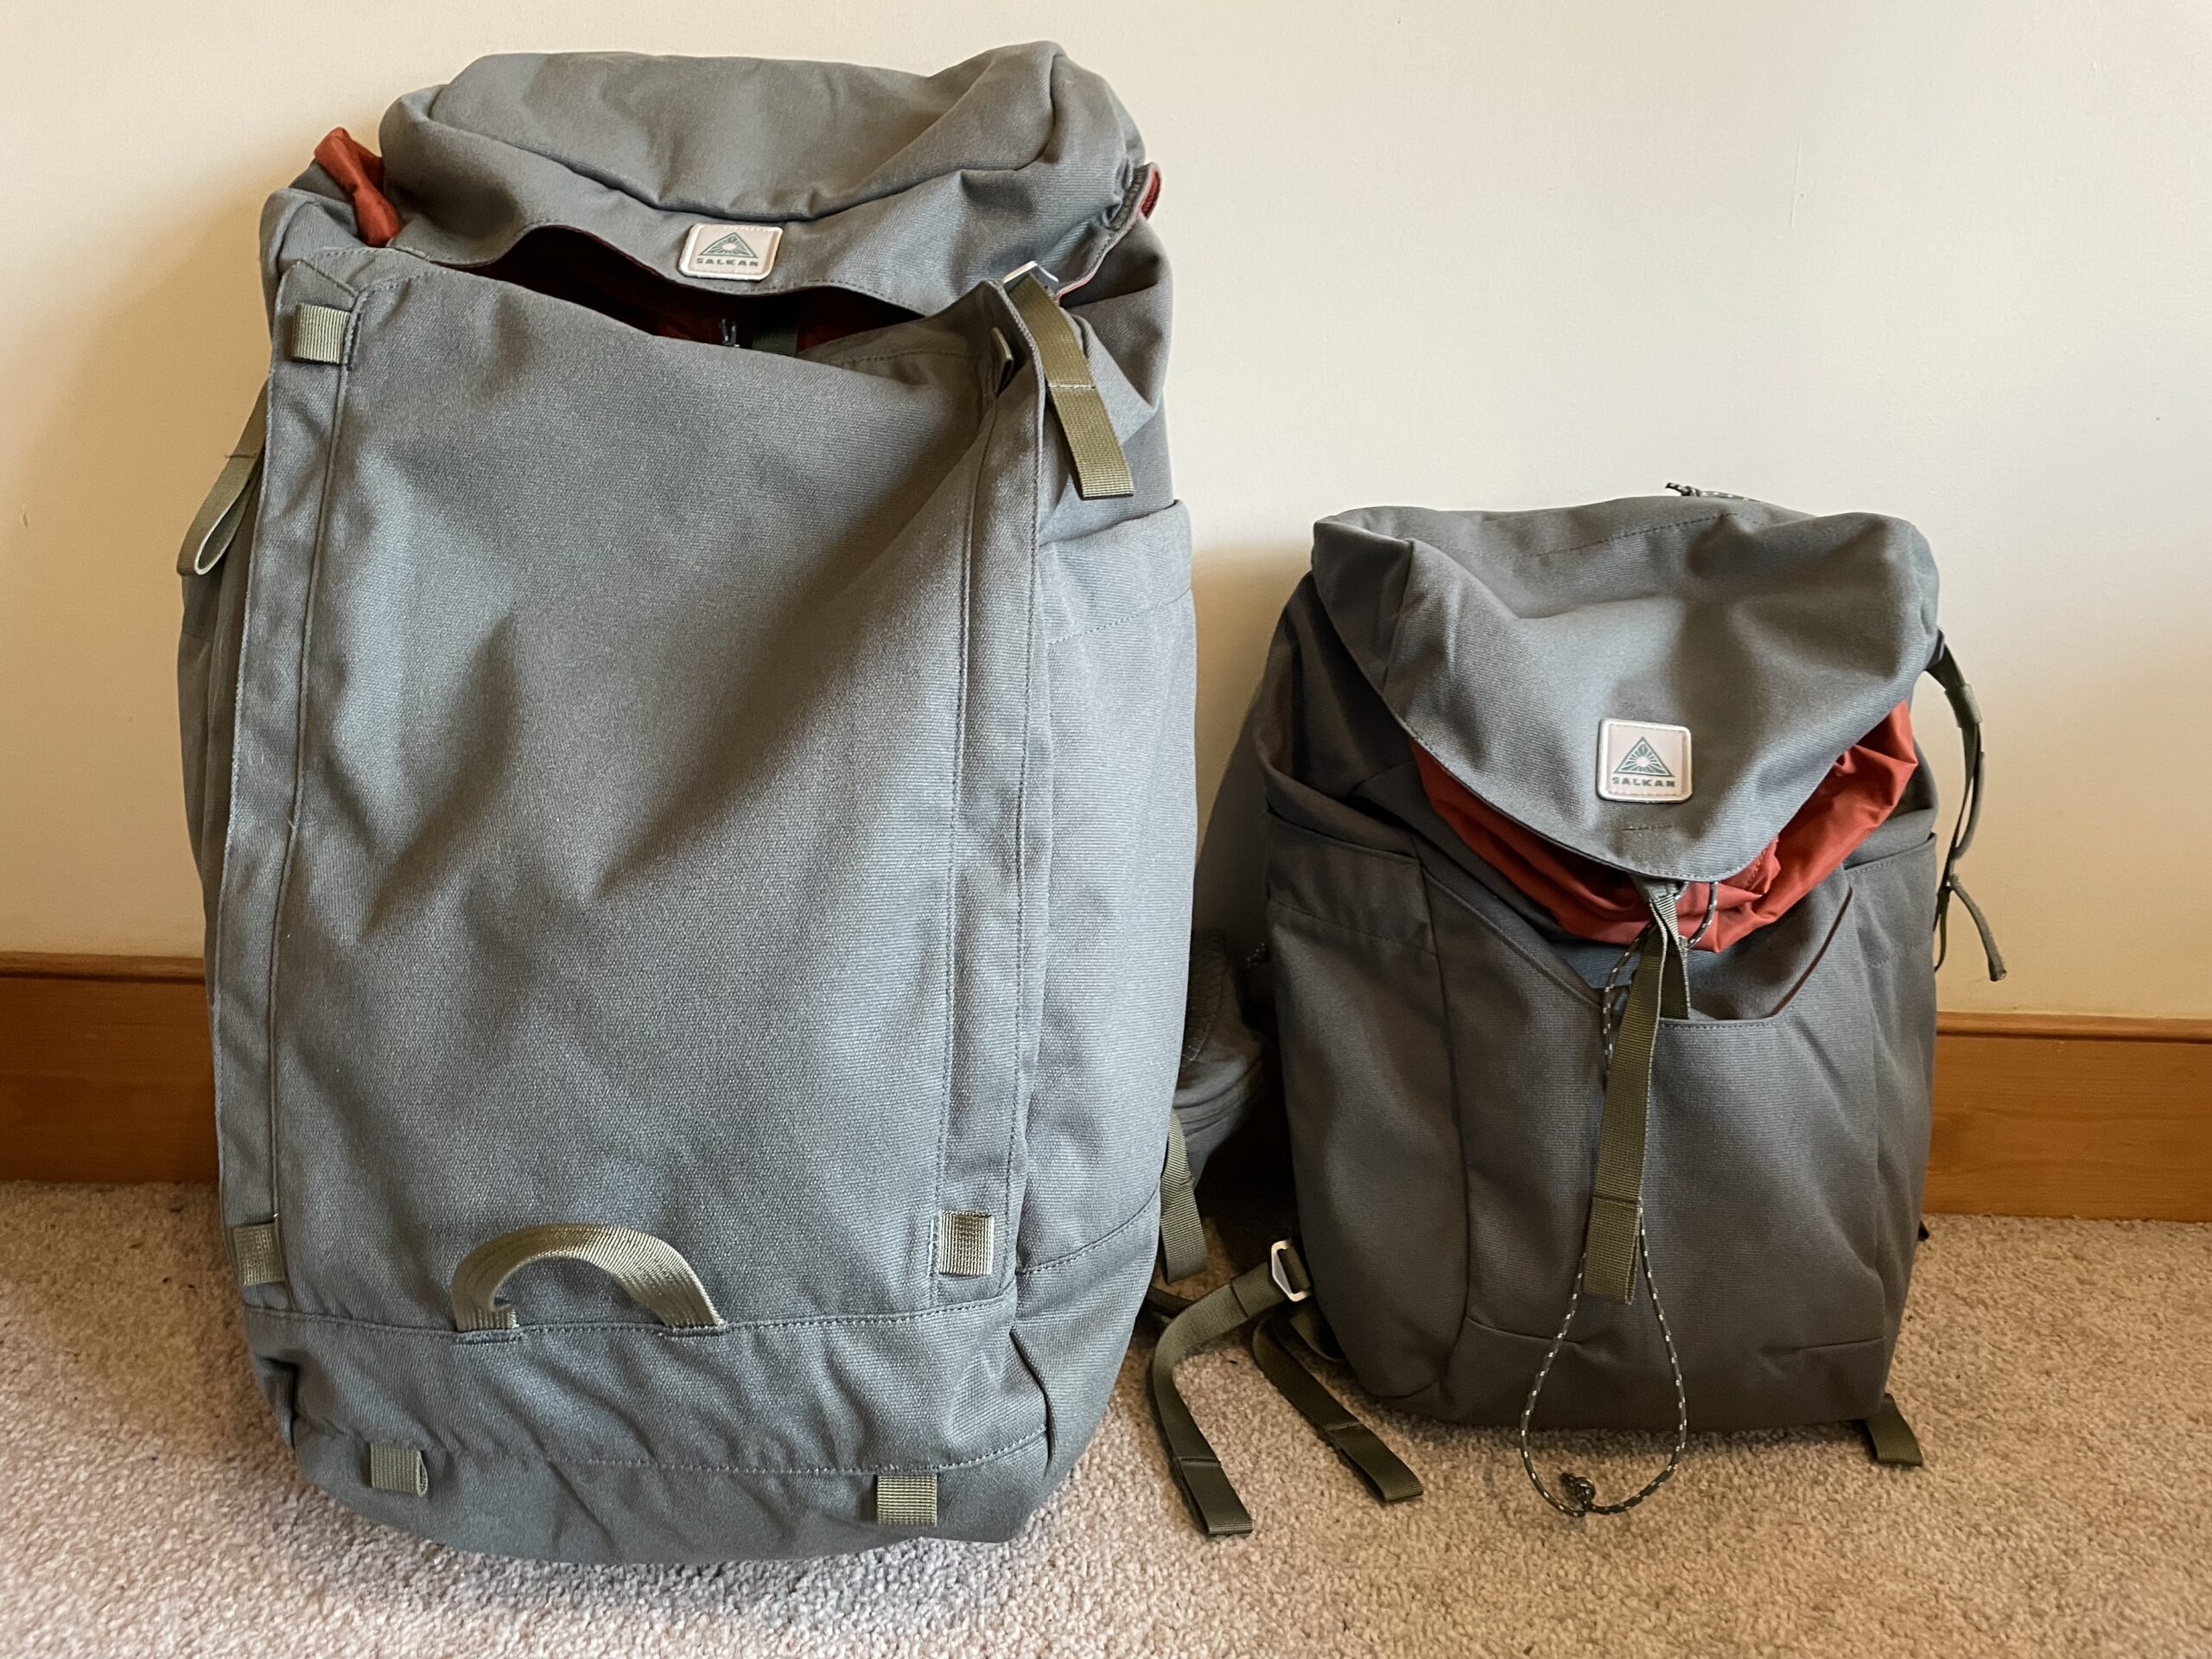 Big Backpacks, Small backpacks, we love em all.